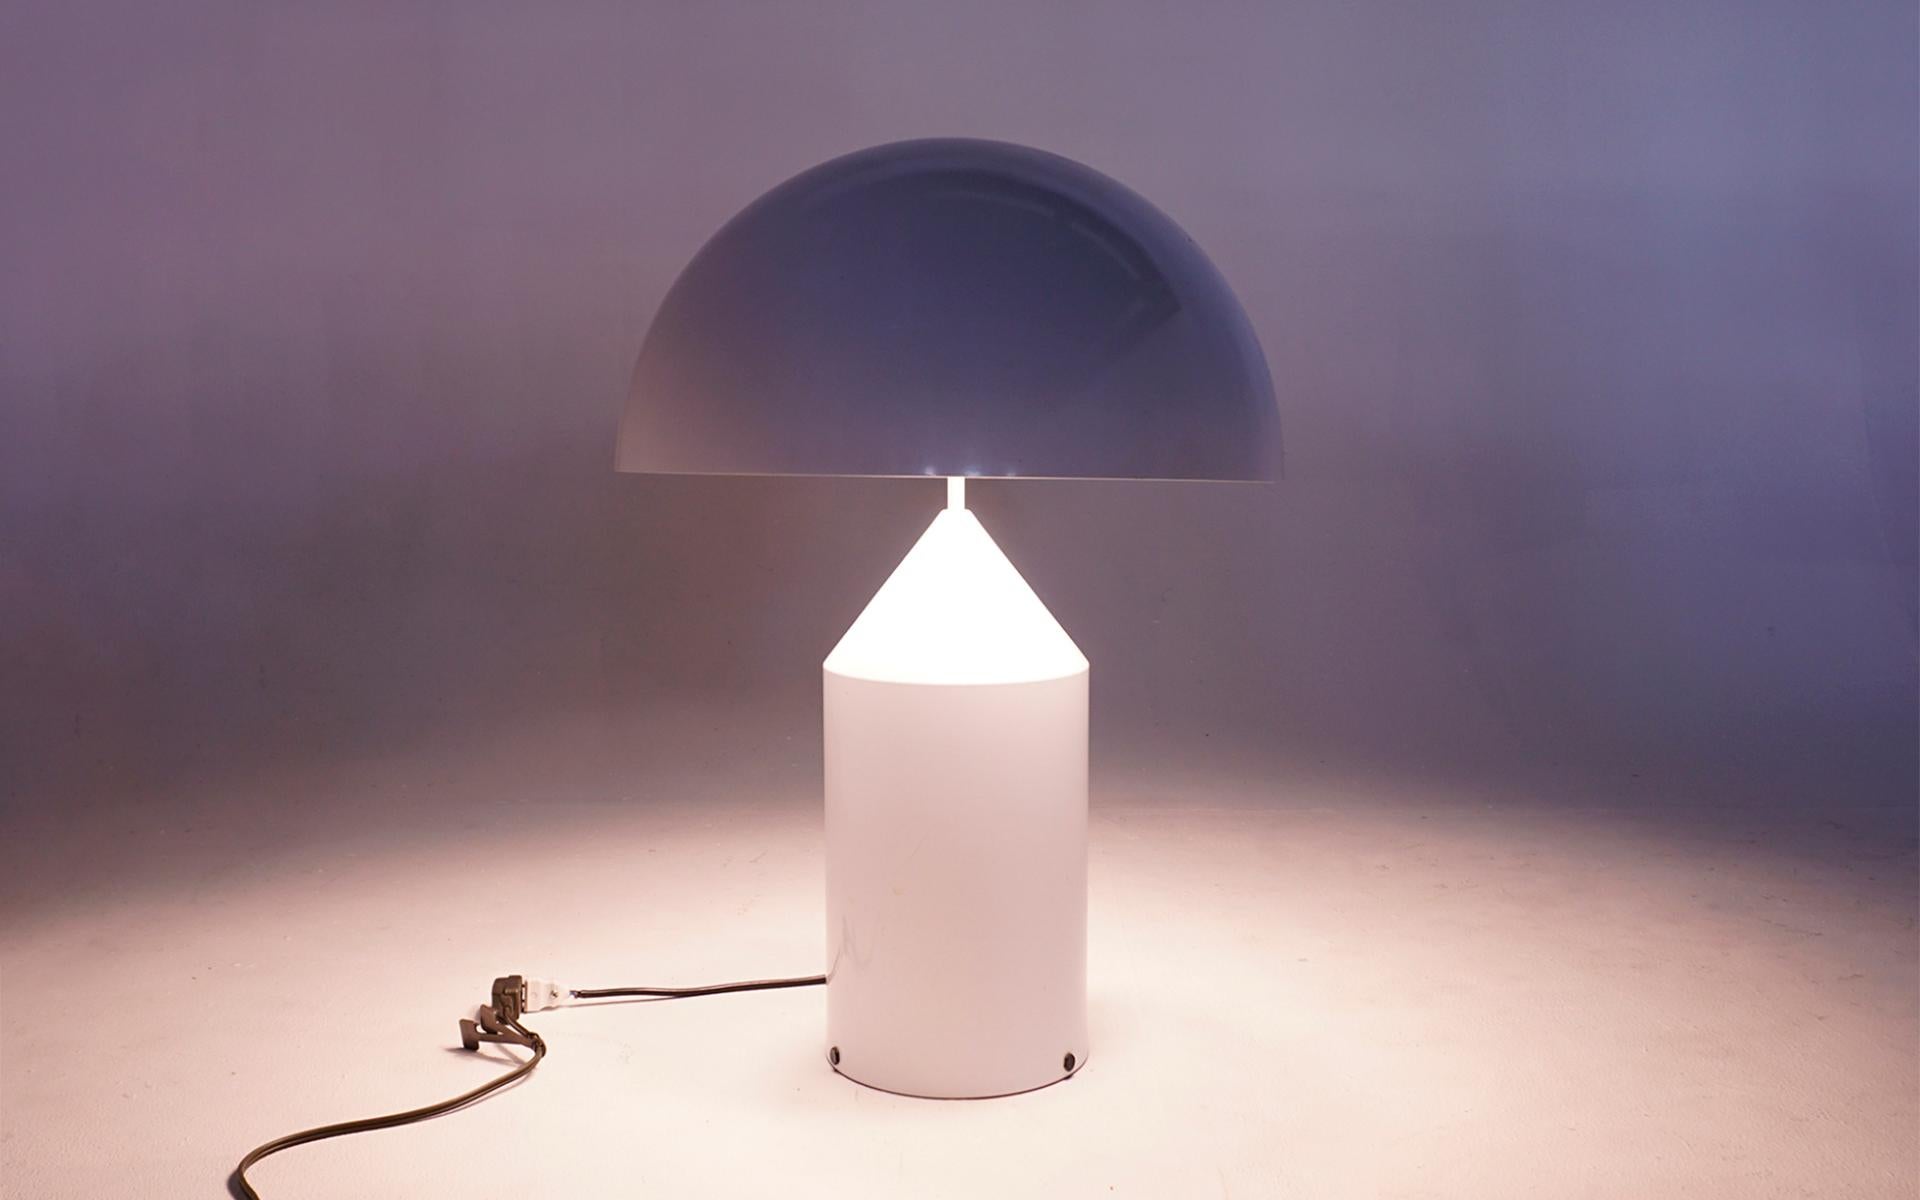 Lampe de table en acier émaillé blanc de première production, conçue par Vico Magistretti. Cet exemplaire a été acheté par le propriétaire d'origine, un architecte, à Londres dans les années 1980. Elle est restée avec ce seul propriétaire depuis.